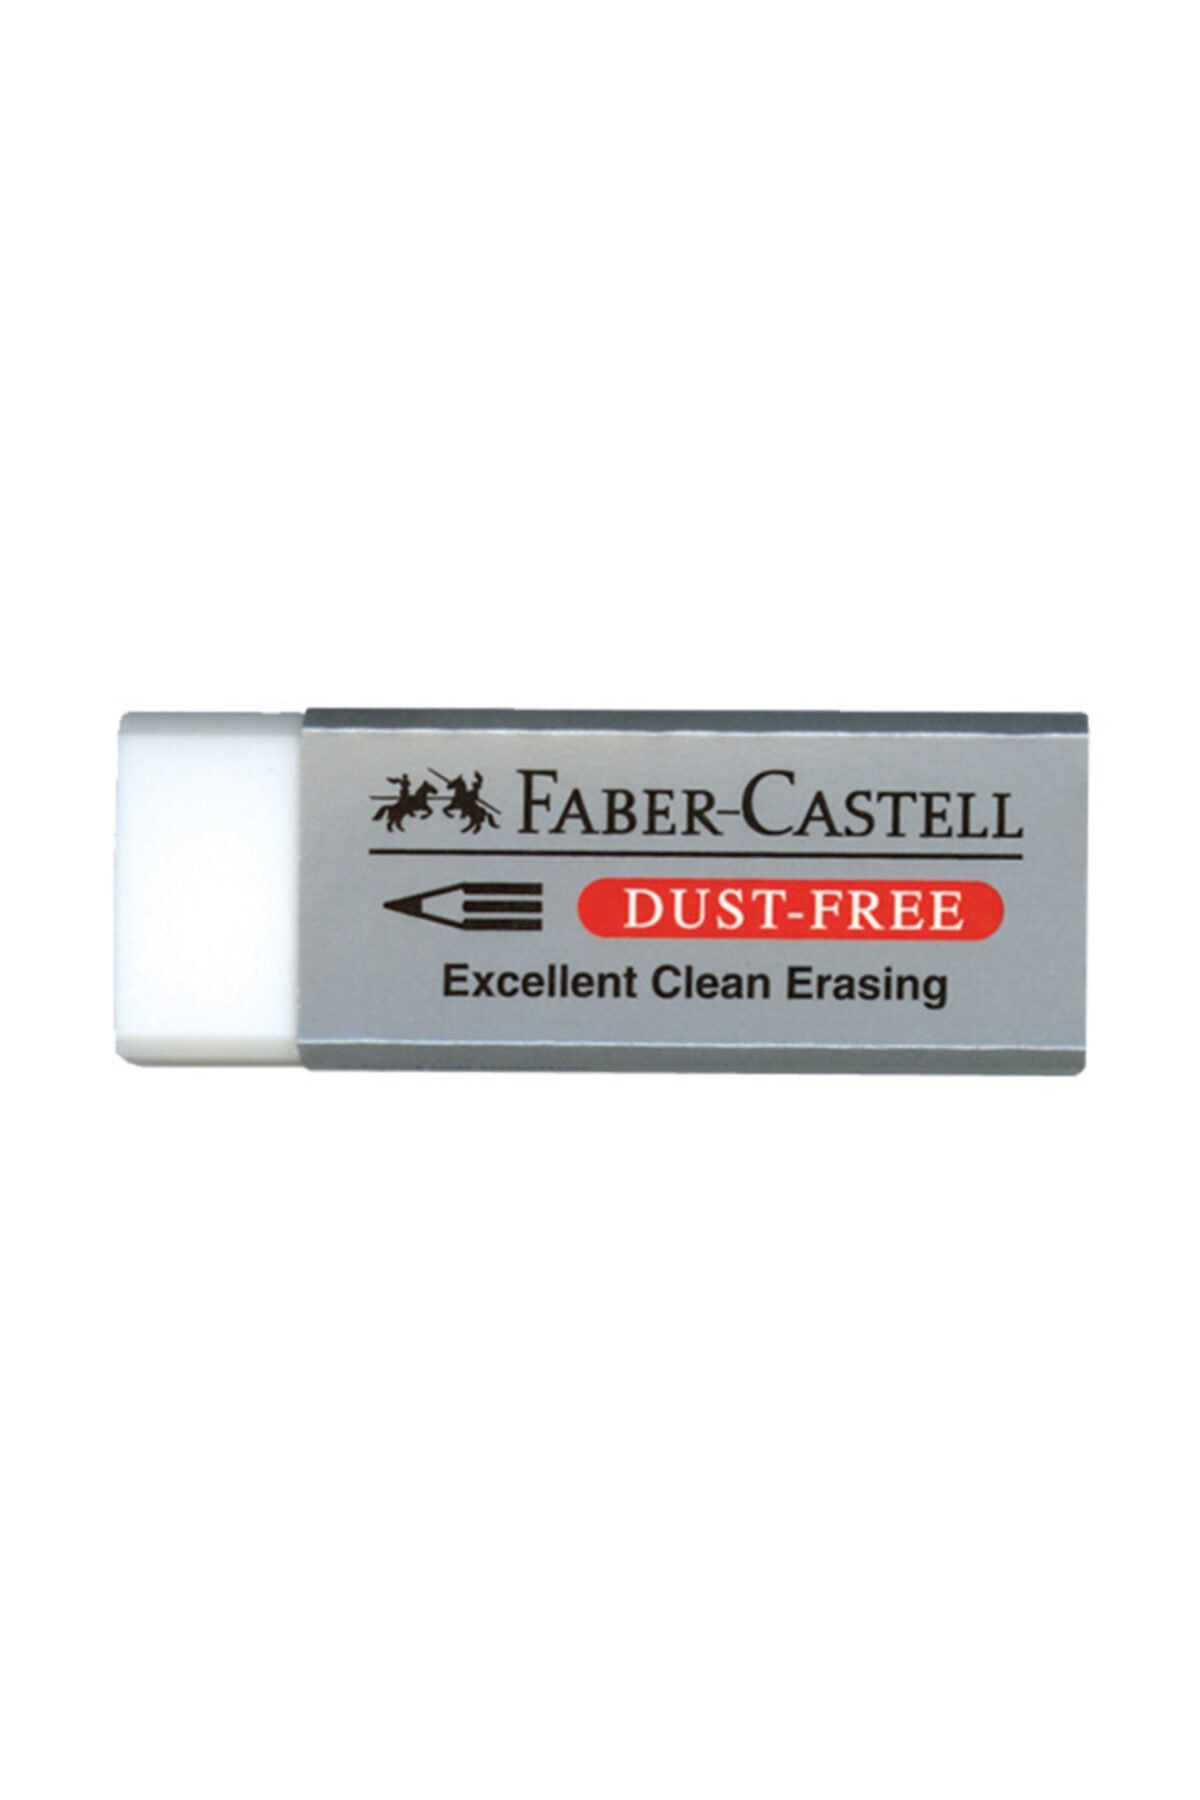 Faber Castell Faber-castell Silgi Dust Free 5130187120000 (1 Paket 20 Adet)